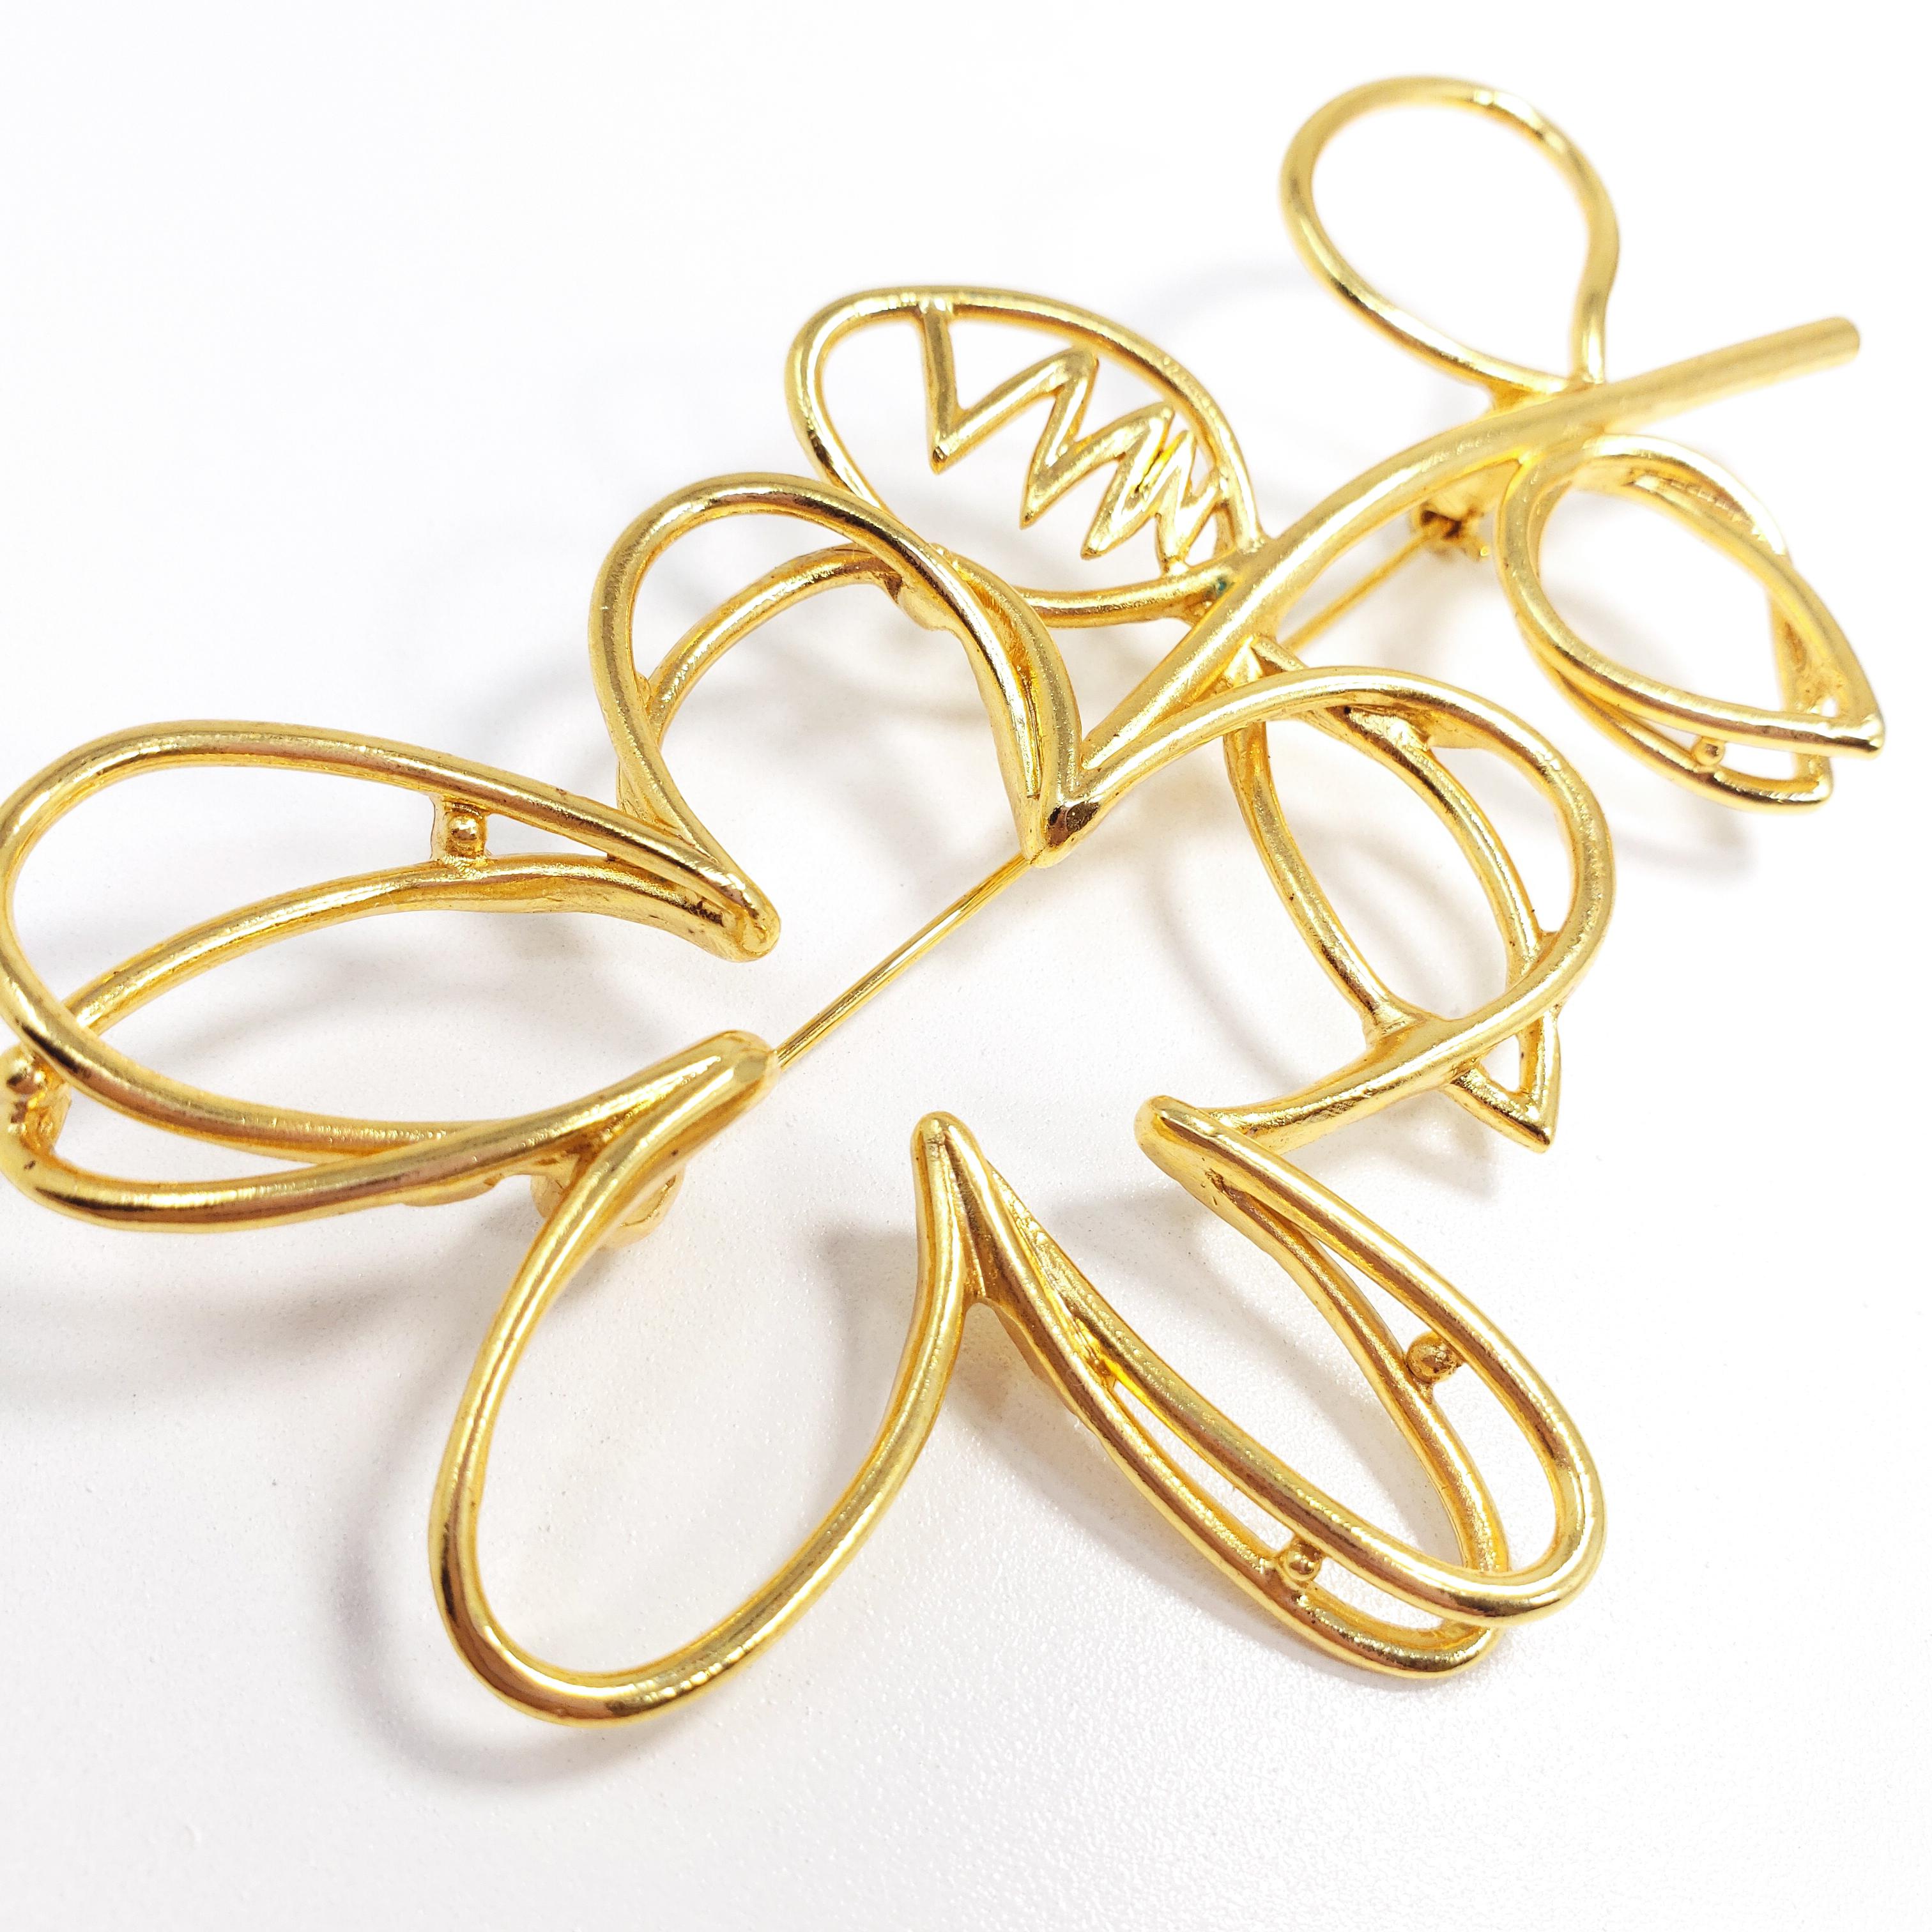 Modern Oscar de la Renta Botanical Scribble Flower Brooch Pin in Gold